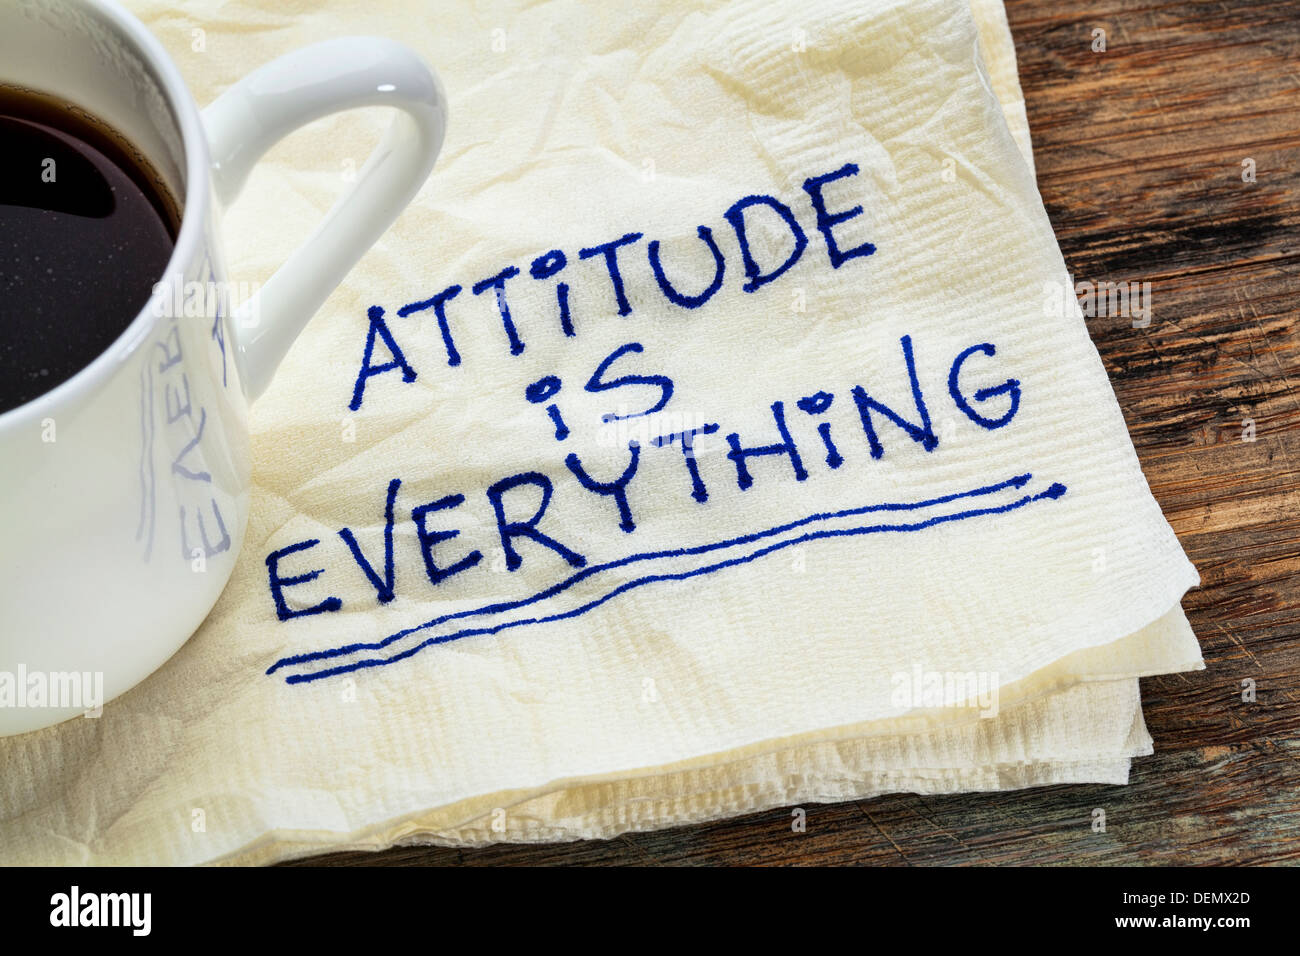 La actitud es todo - lema de motivación en una servilleta con una taza de café Foto de stock